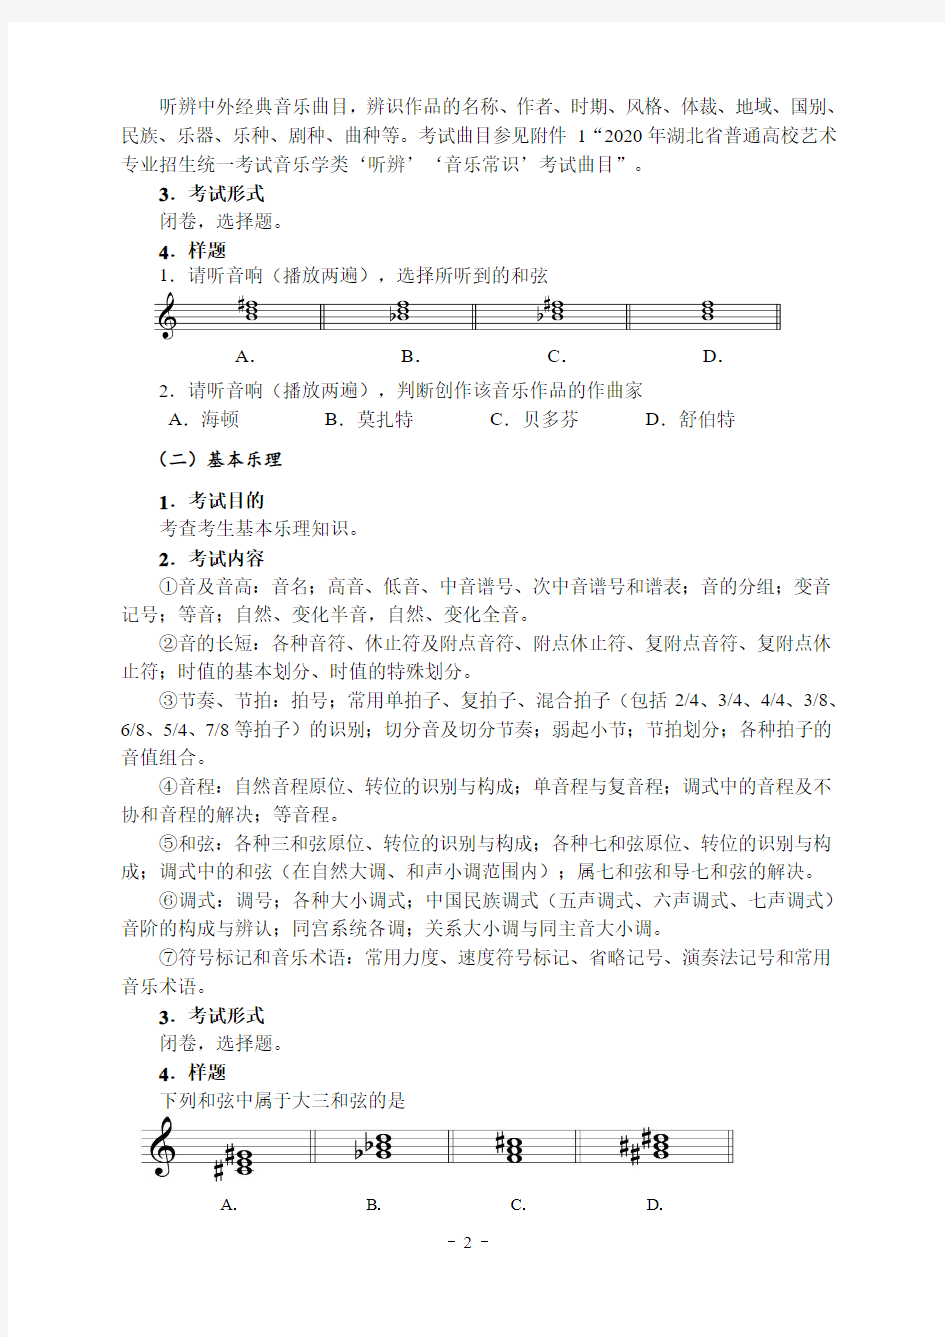 2020年湖北省普通高校艺术专业招生统一考试音乐学类考试